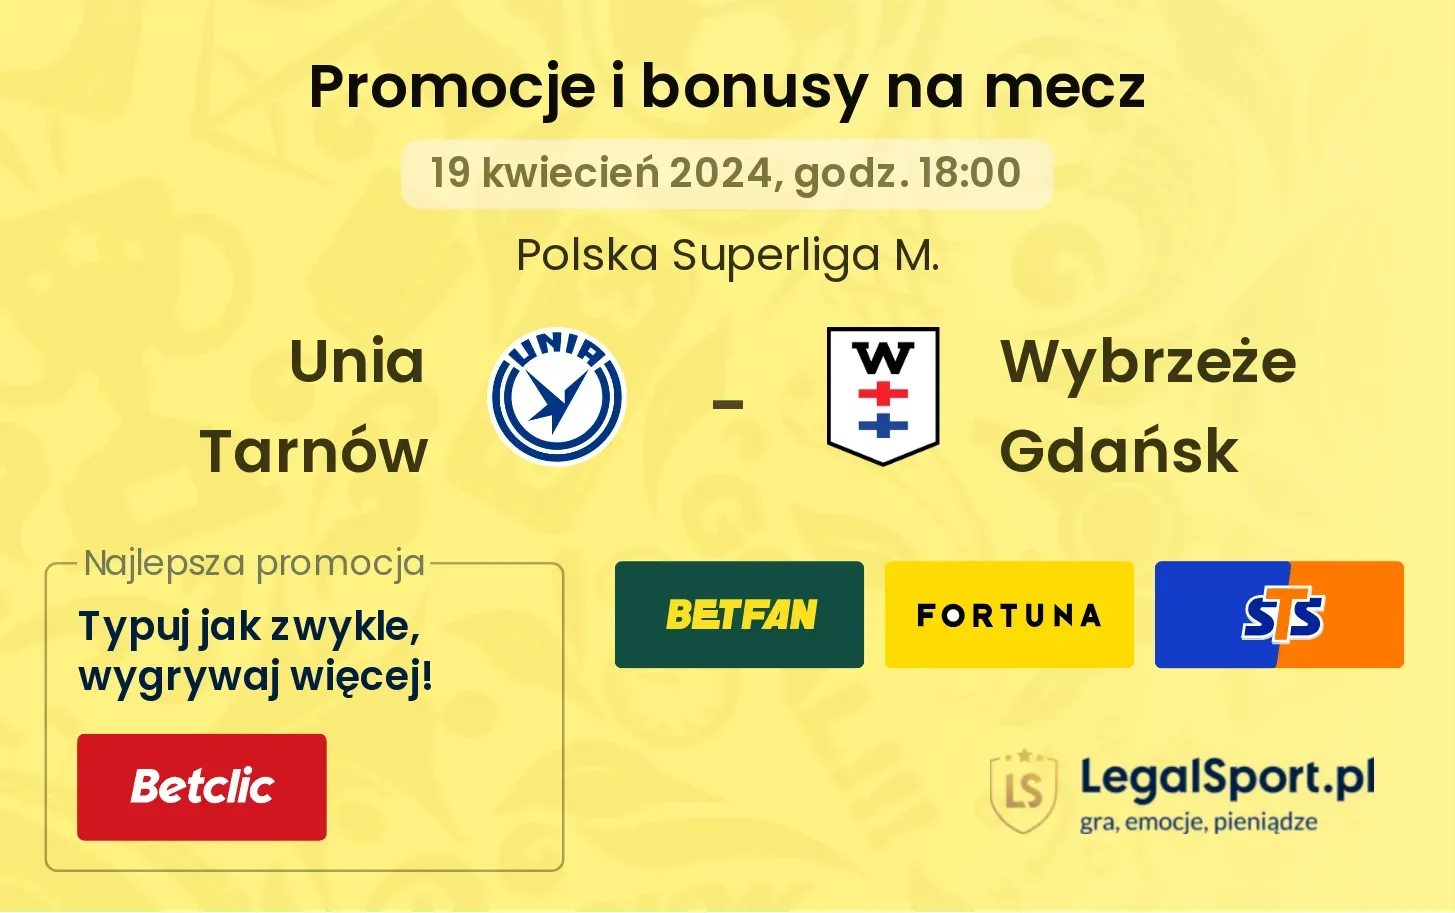 Unia Tarnów - Wybrzeże Gdańsk promocje bonusy na mecz